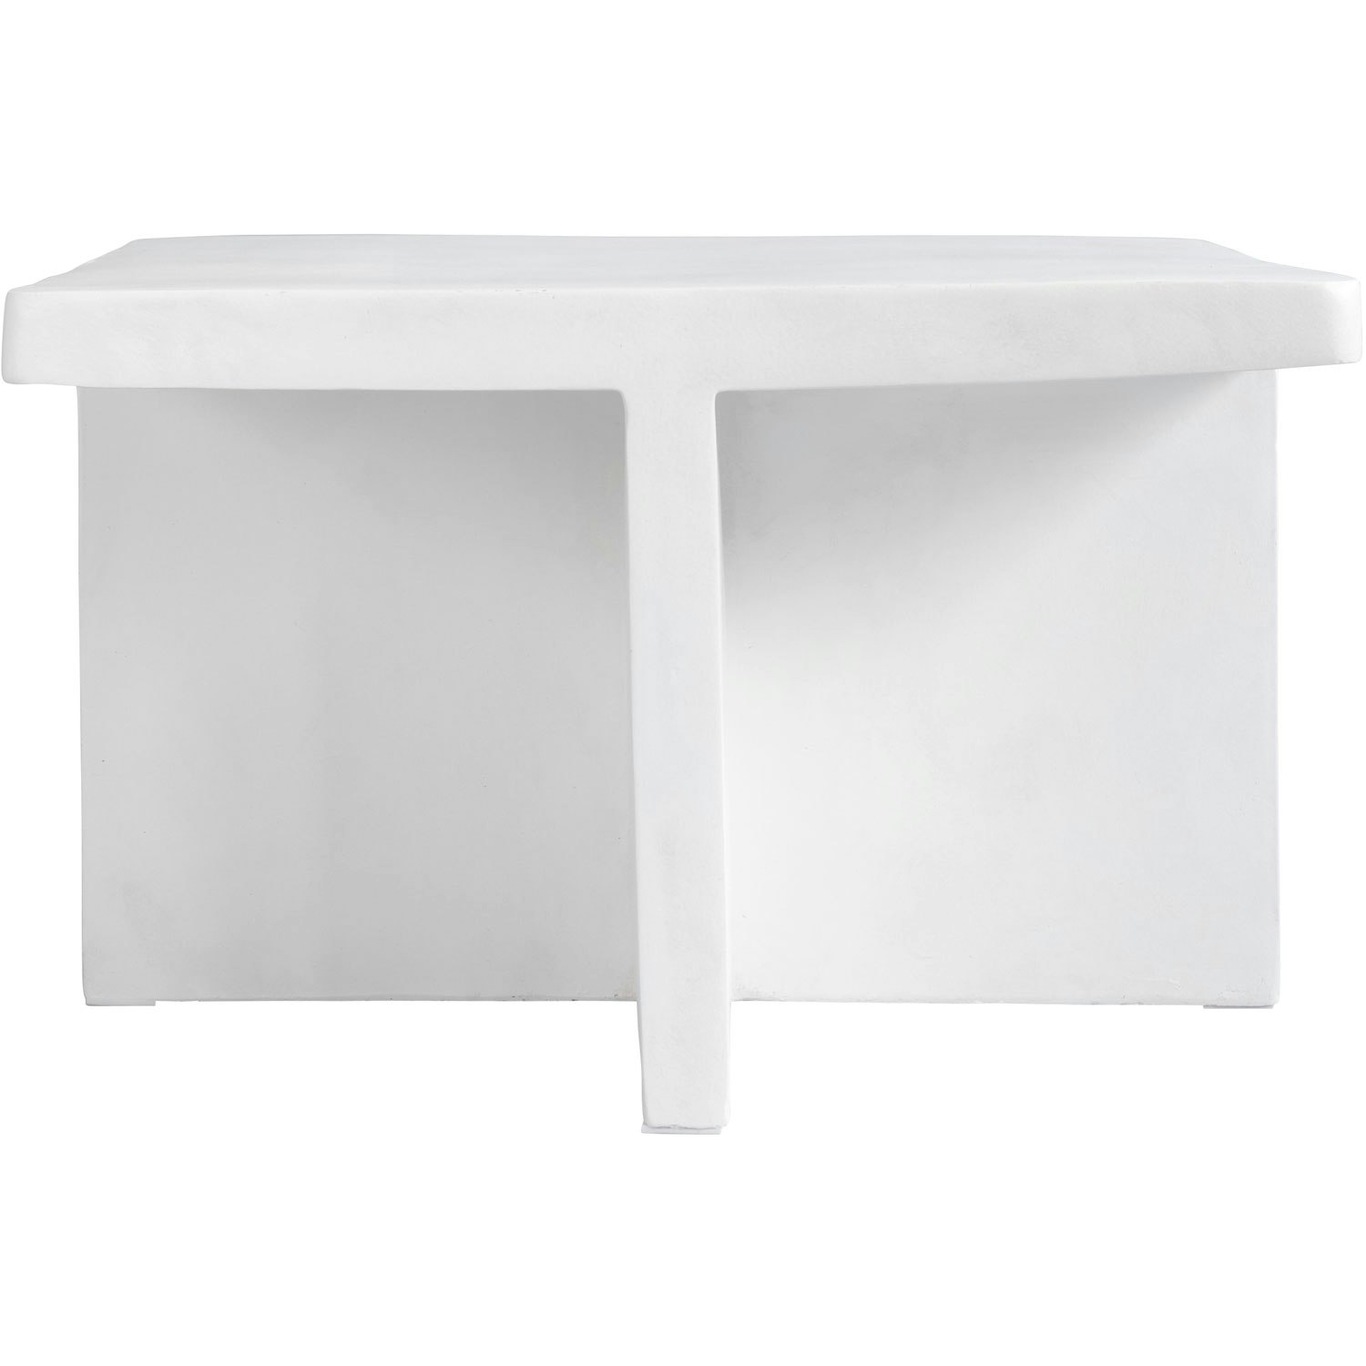 Brutus Coffee Table 60x60 cm, Bone White